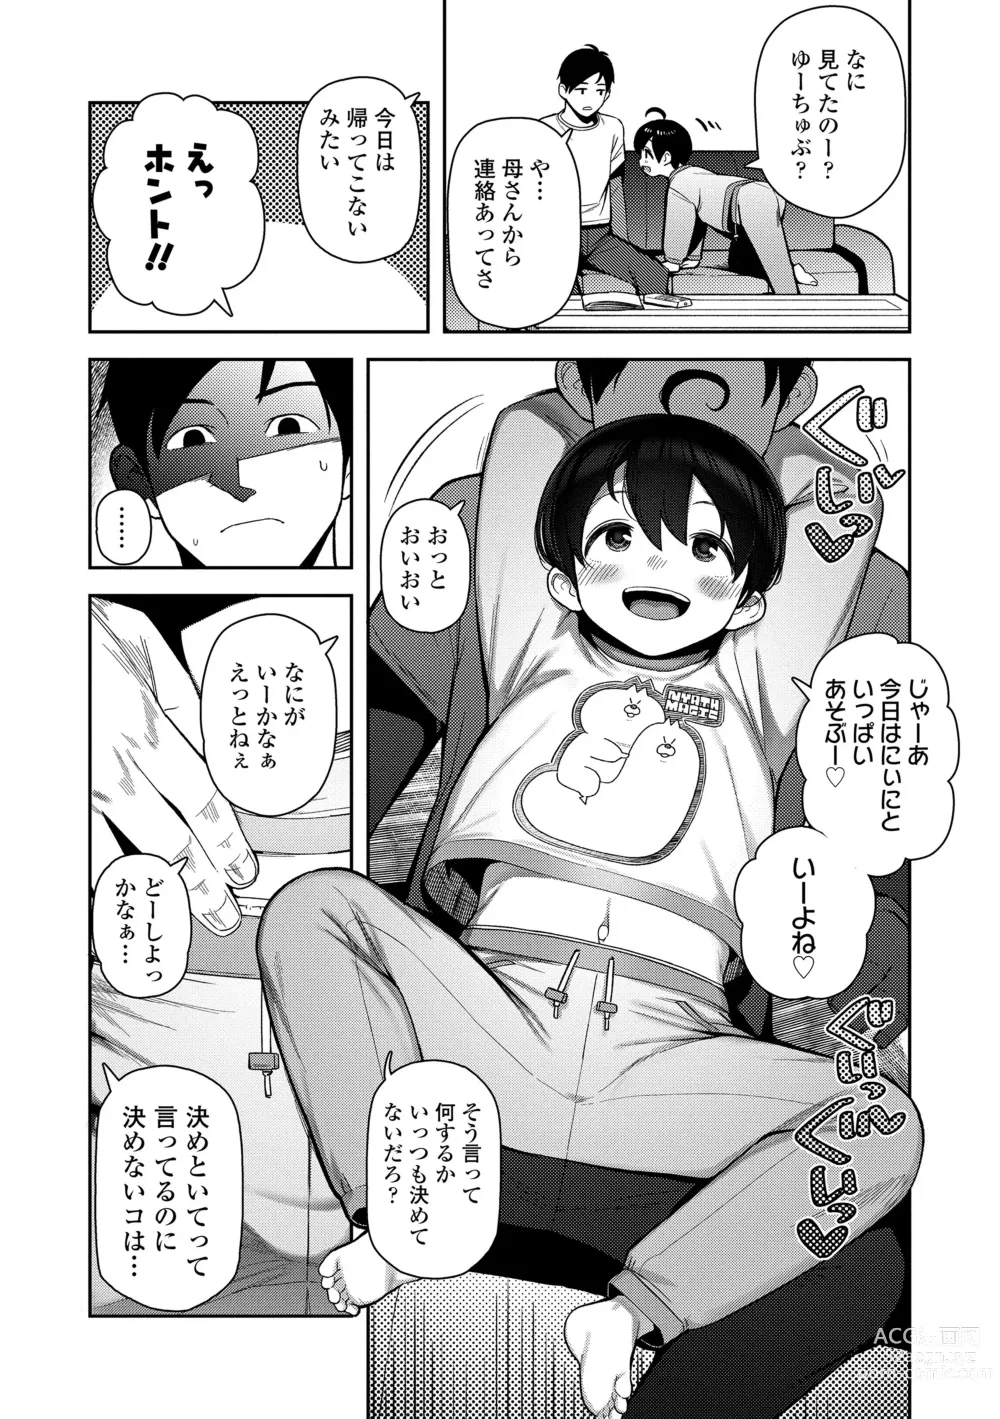 Page 6 of manga Chitchakute ohisama no nioi